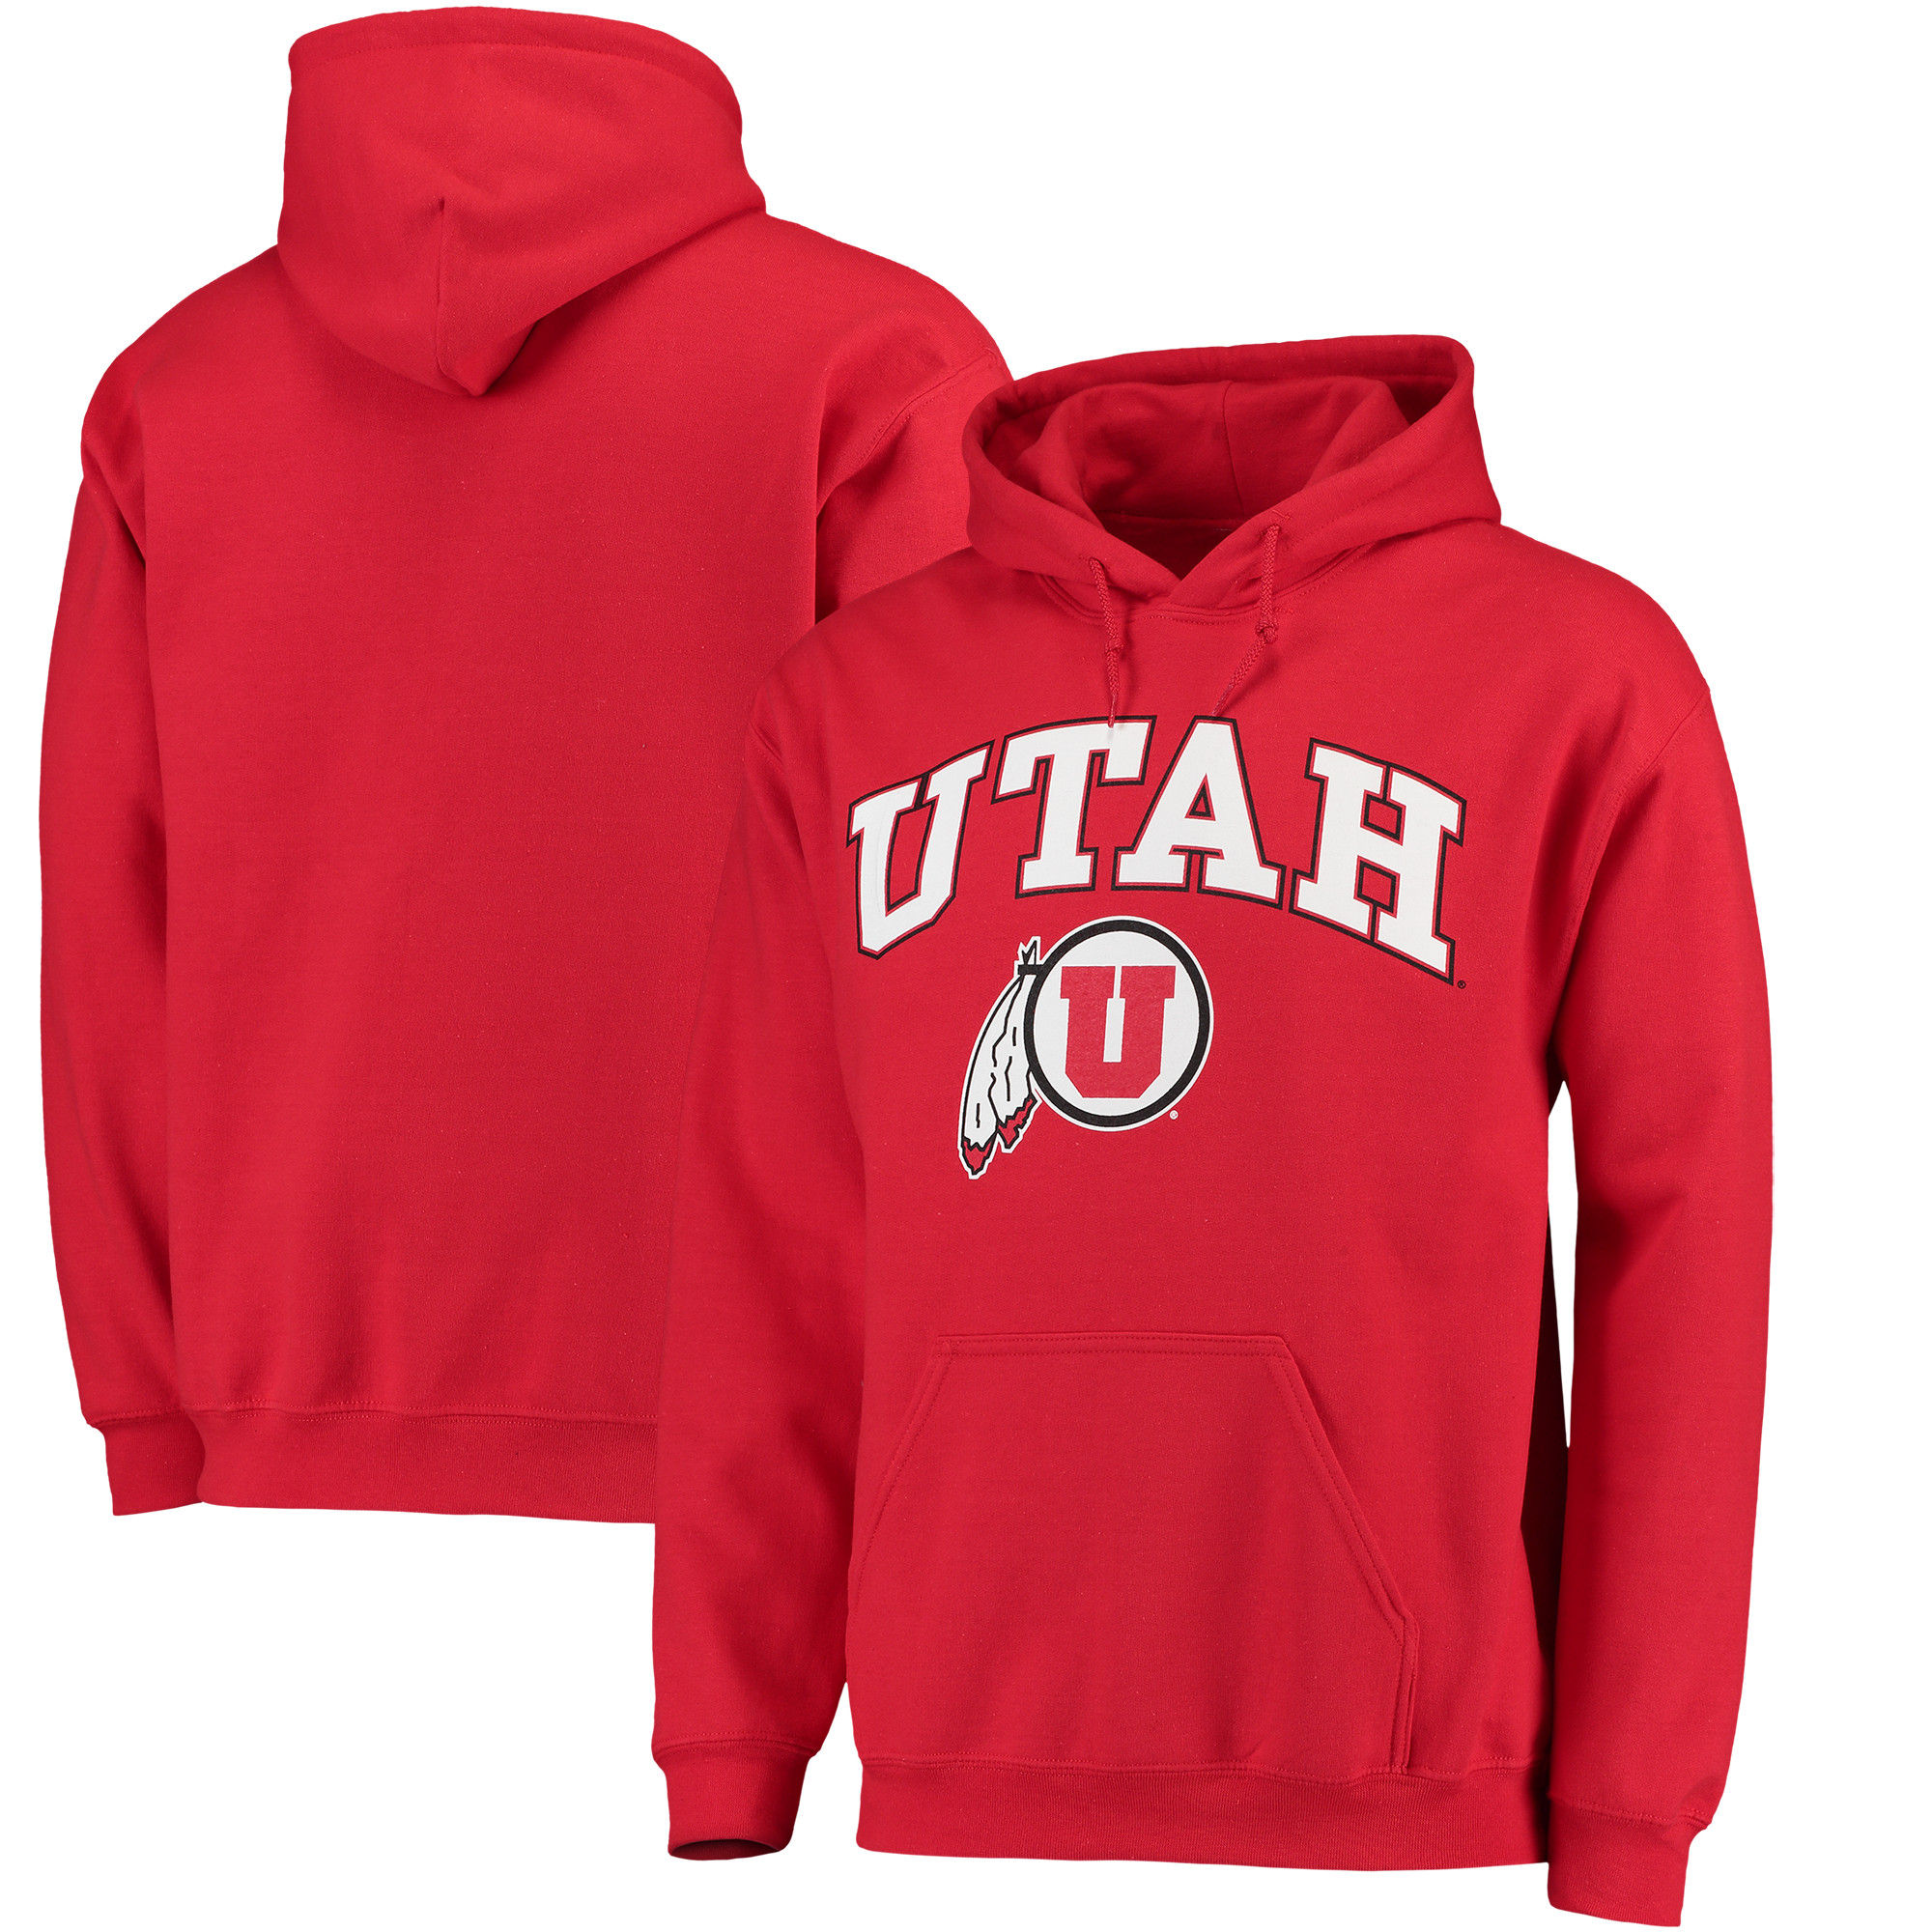 Utah Utes Red Campus Pullover Hoodie